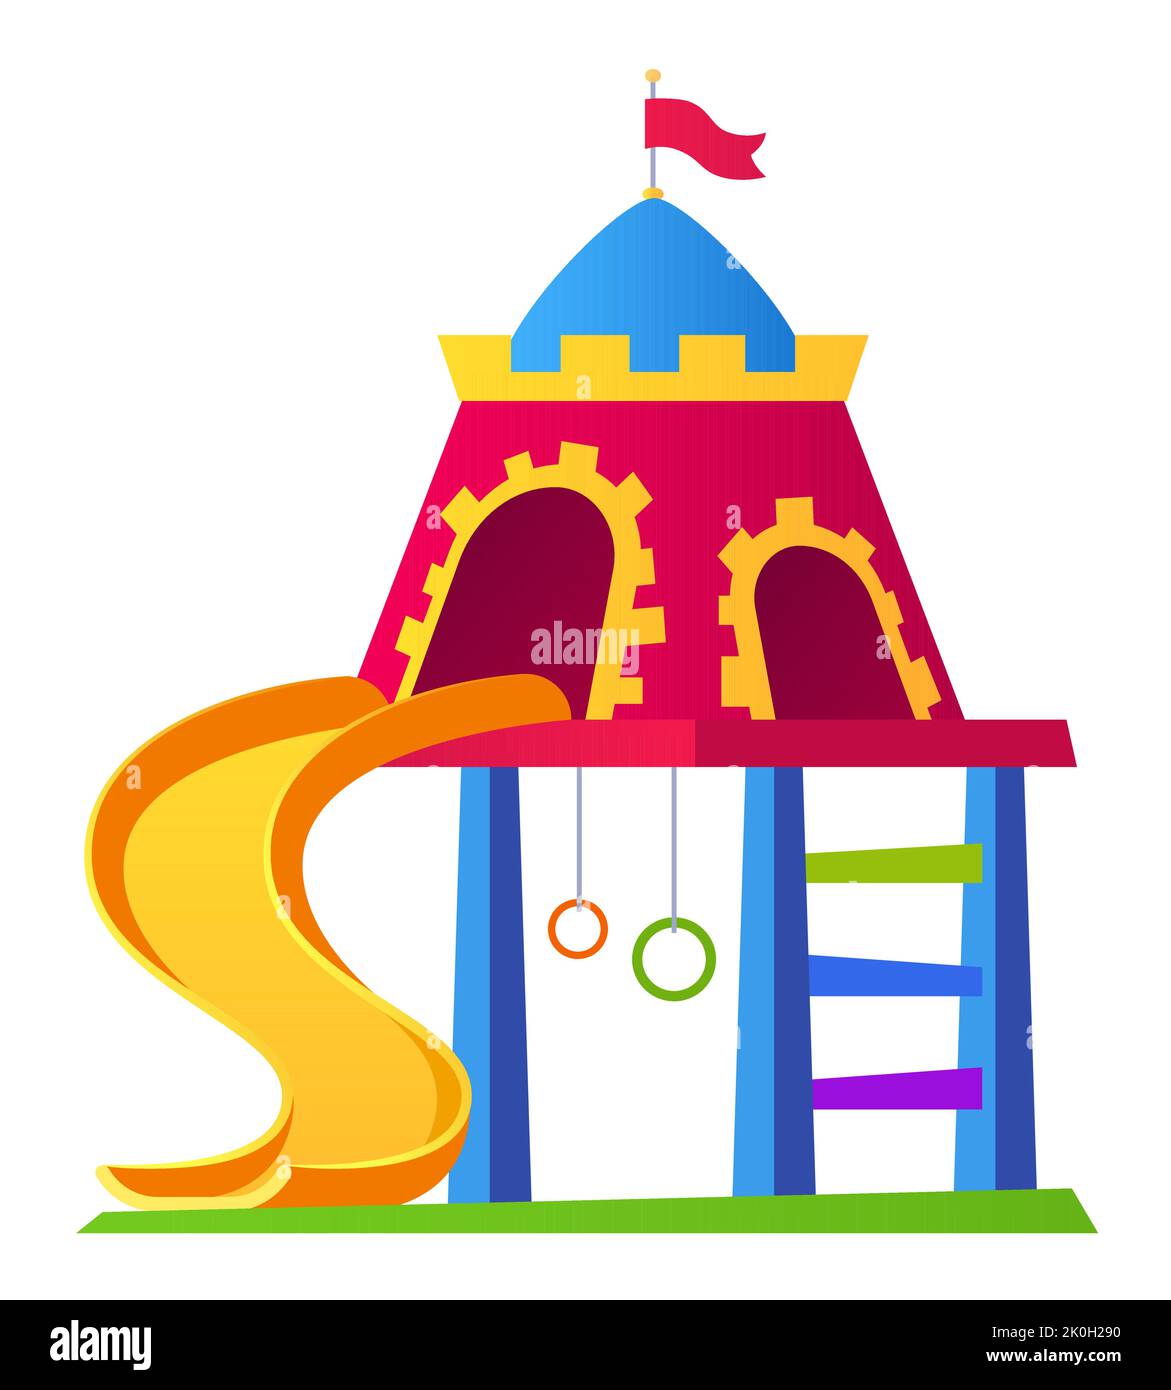 Terrain de jeu pour les enfants d'âge préscolaire - moderne design plat style unique image isolée Illustration de Vecteur